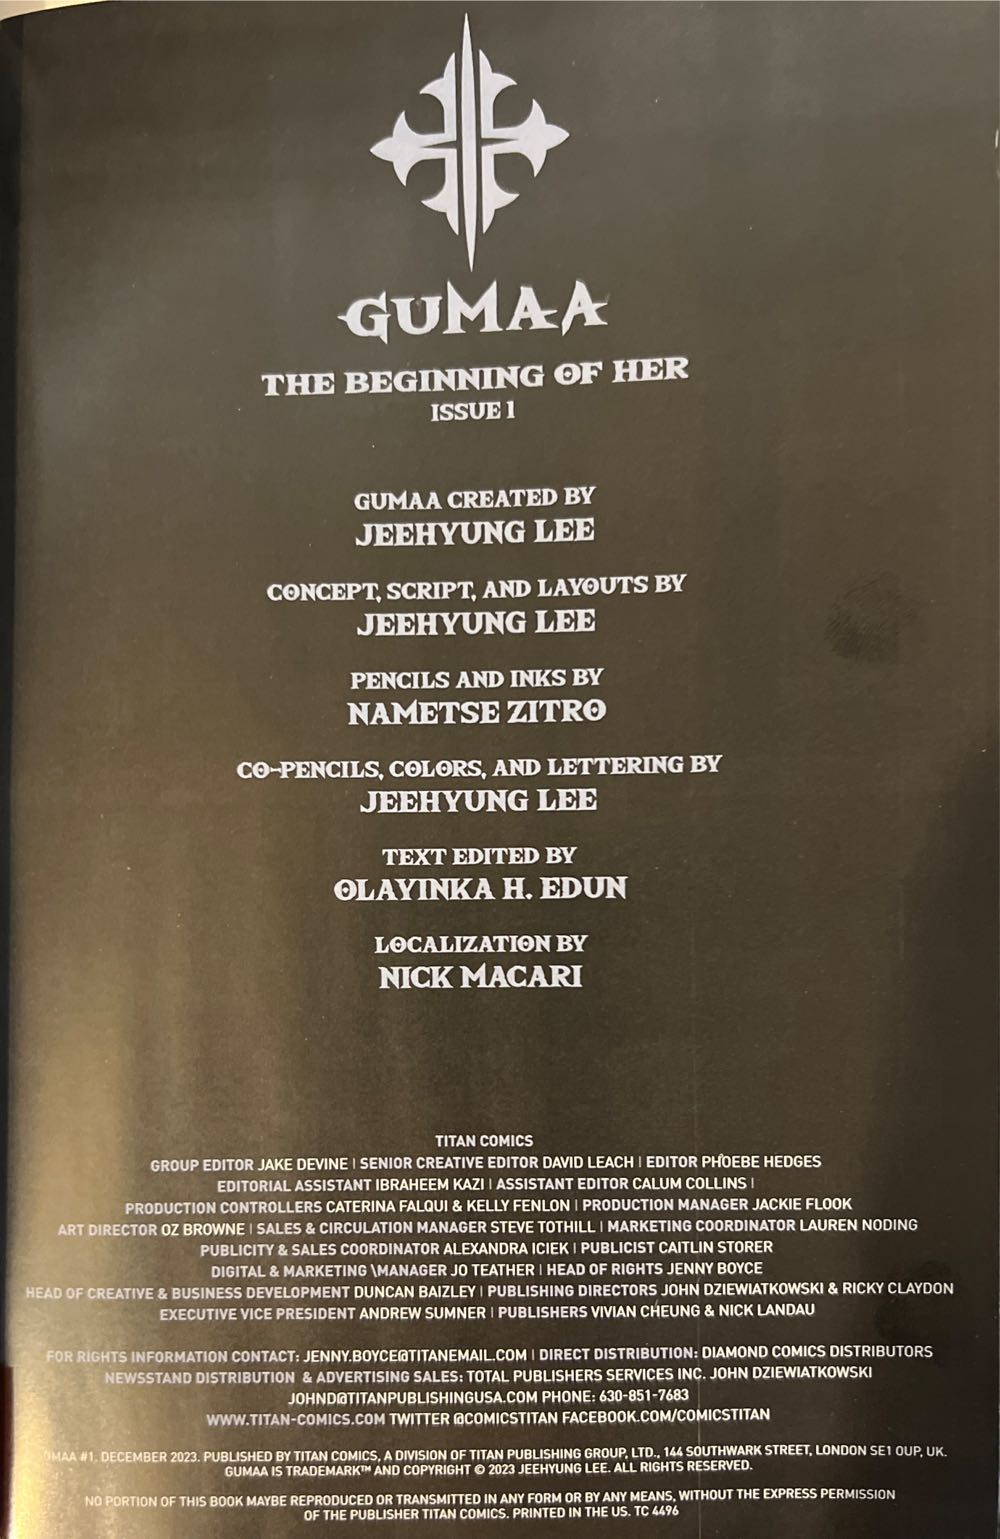 Gumaa: The Beginning Of Her - Titan Comics (1 - Dec 2023) comic book collectible [Barcode 79361173673300121] - Main Image 2